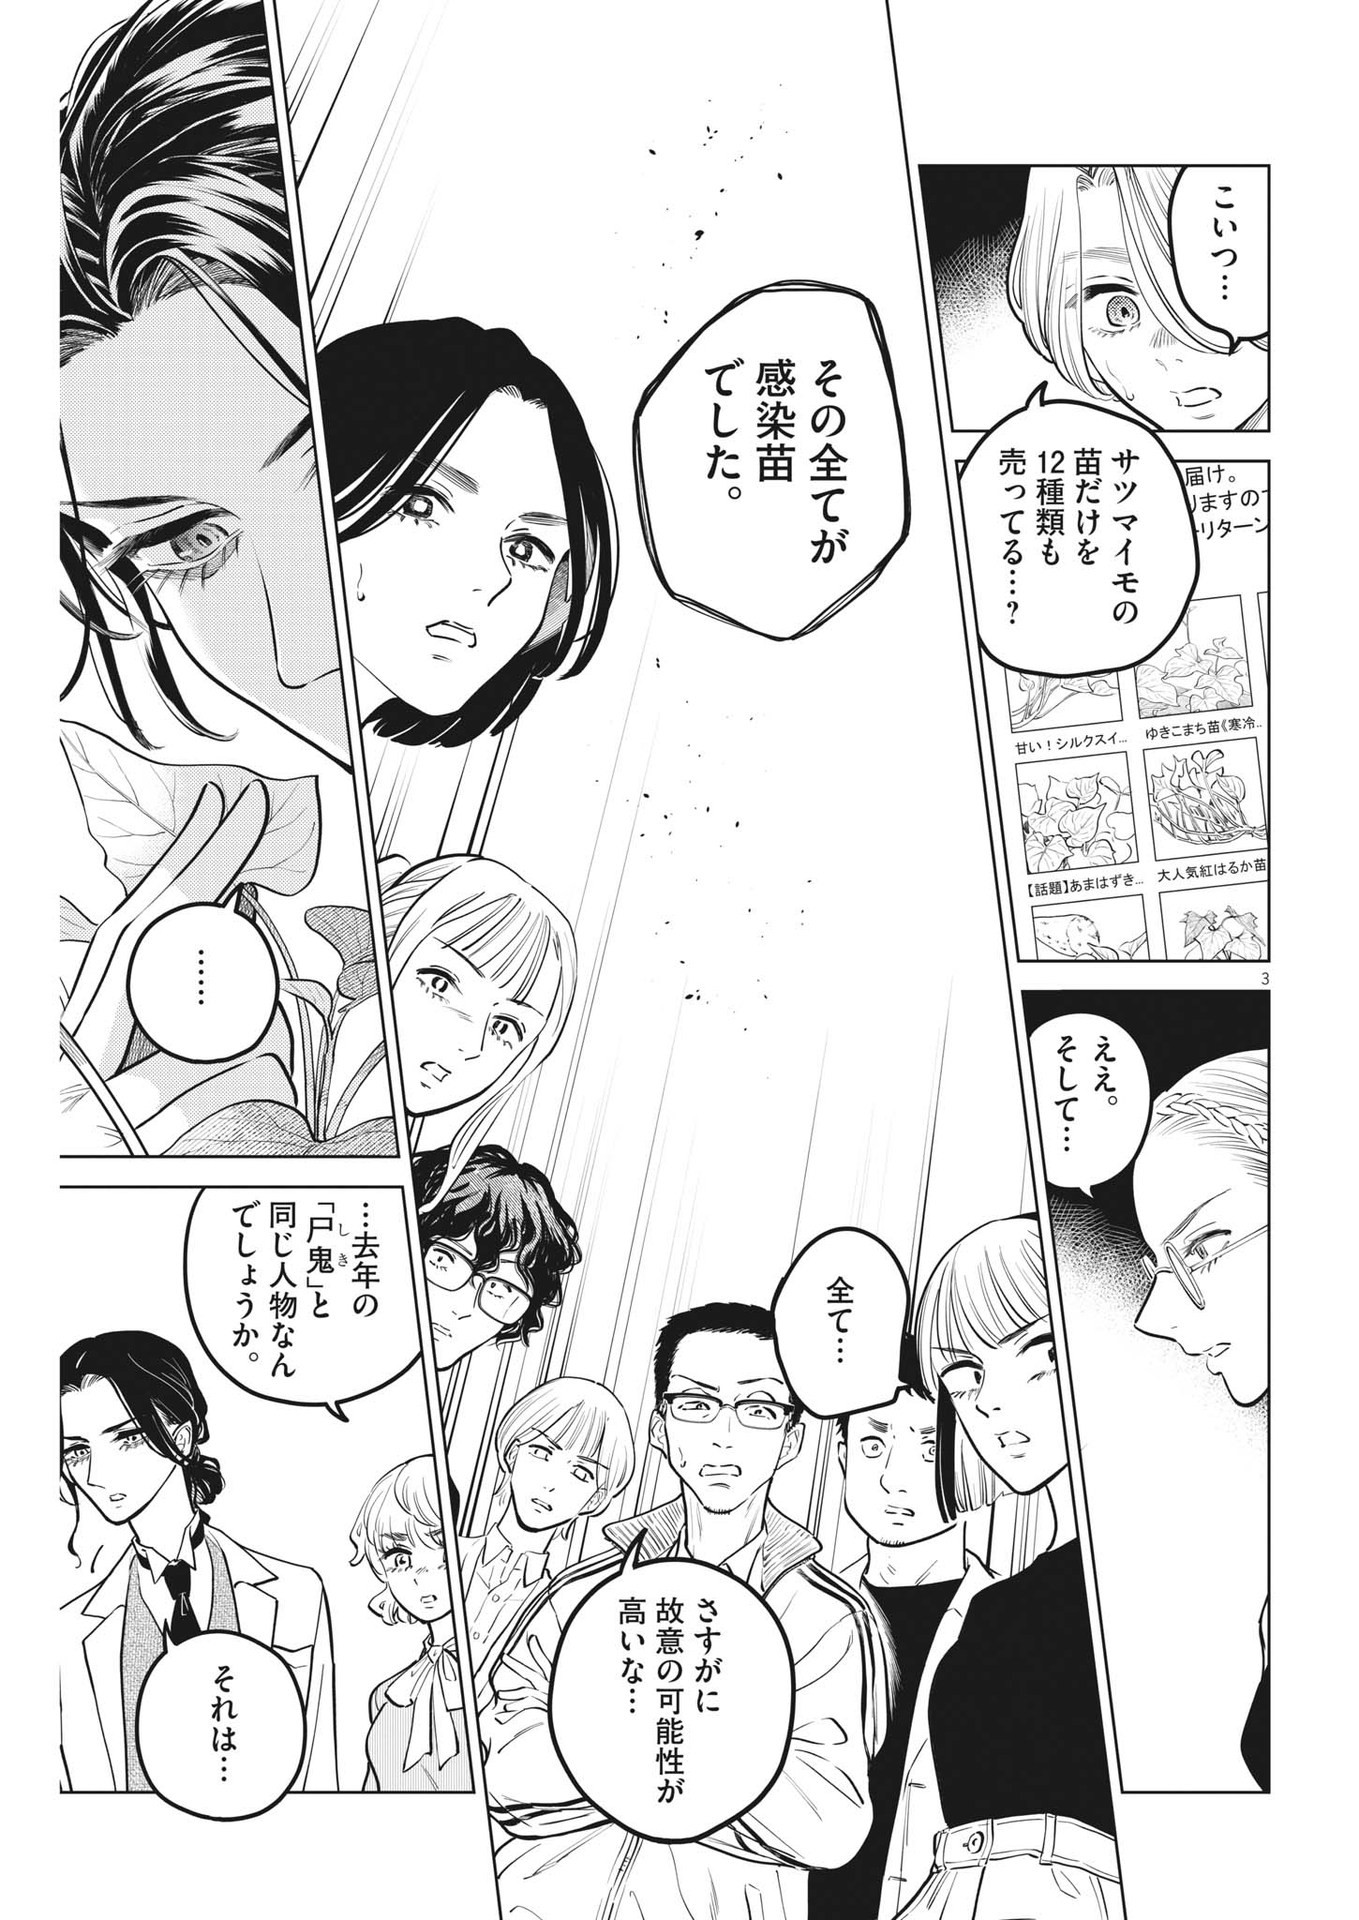 Shokubutsu Byourigaku wa Ashita no Kimi o Negau - Chapter 18 - Page 3